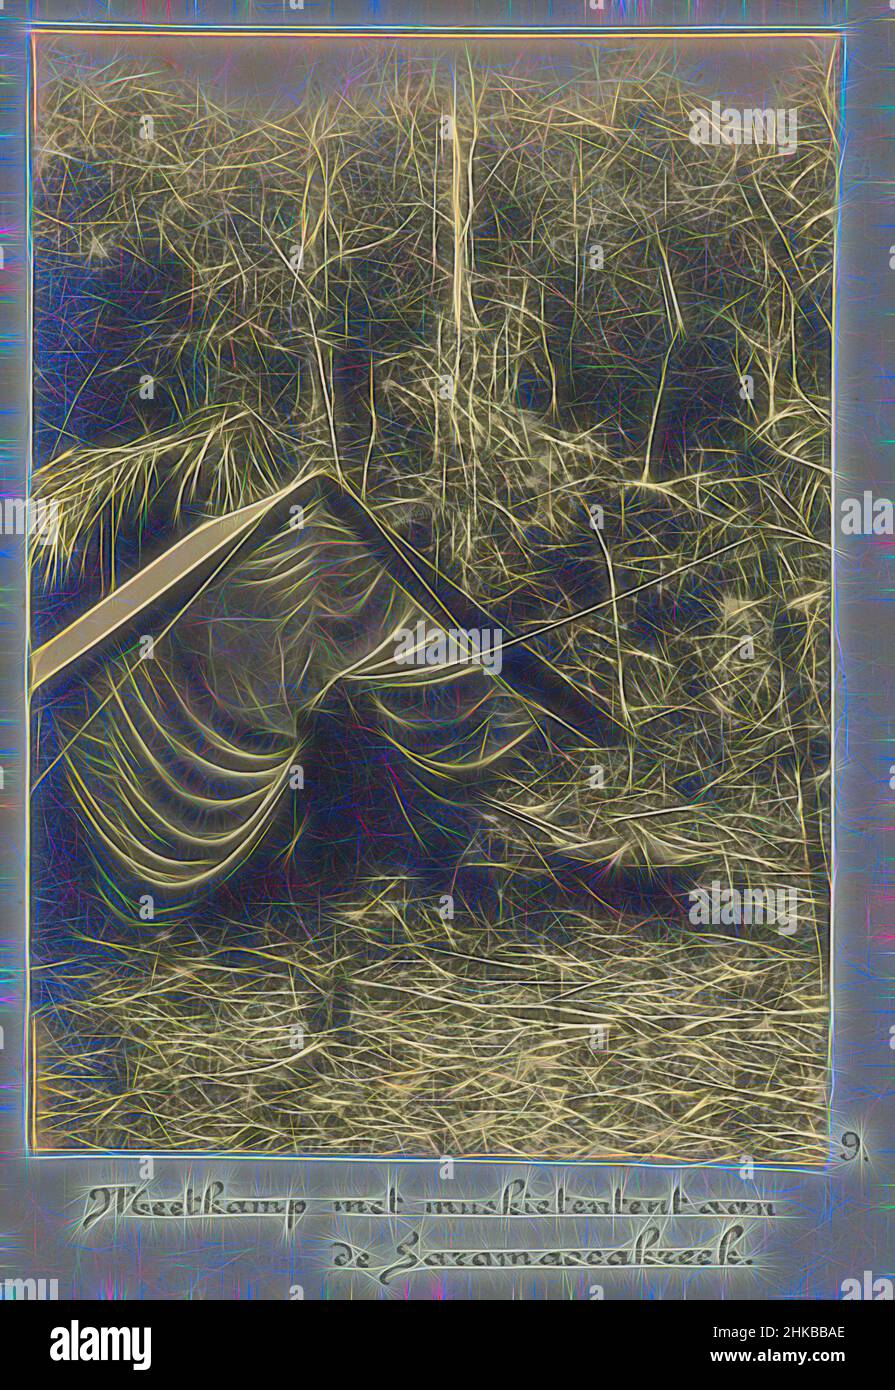 Inspiriert vom Messcamp mit Moskitonetz am Saramacca Creek, Einem mit Moskitonetzen bedeckten Zelt, am Messcamp im Dschungel am Little Saramacca River (Saramacca Creek). Teil des Fotoalbums Souvenir de Voyage (Teil 1), über das Leben der Familie Doijer in und um die, von Artotop neu erfunden. Klassische Kunst neu erfunden mit einem modernen Twist. Design von warmen fröhlichen Leuchten der Helligkeit und Lichtstrahl Strahlkraft. Fotografie inspiriert von Surrealismus und Futurismus, umarmt dynamische Energie der modernen Technologie, Bewegung, Geschwindigkeit und Kultur zu revolutionieren Stockfoto